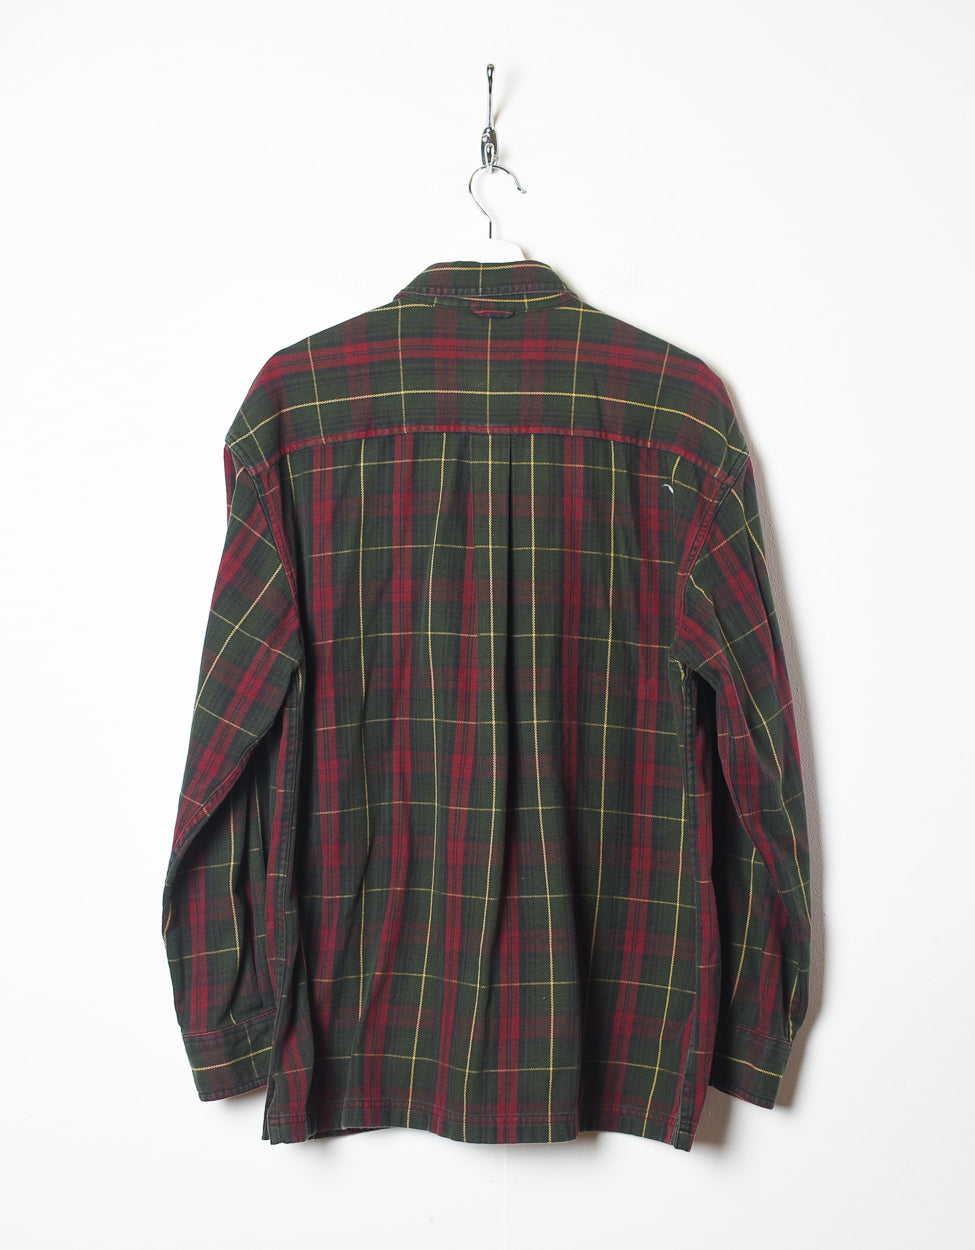 Green Timberland Flannel Shirt - Medium